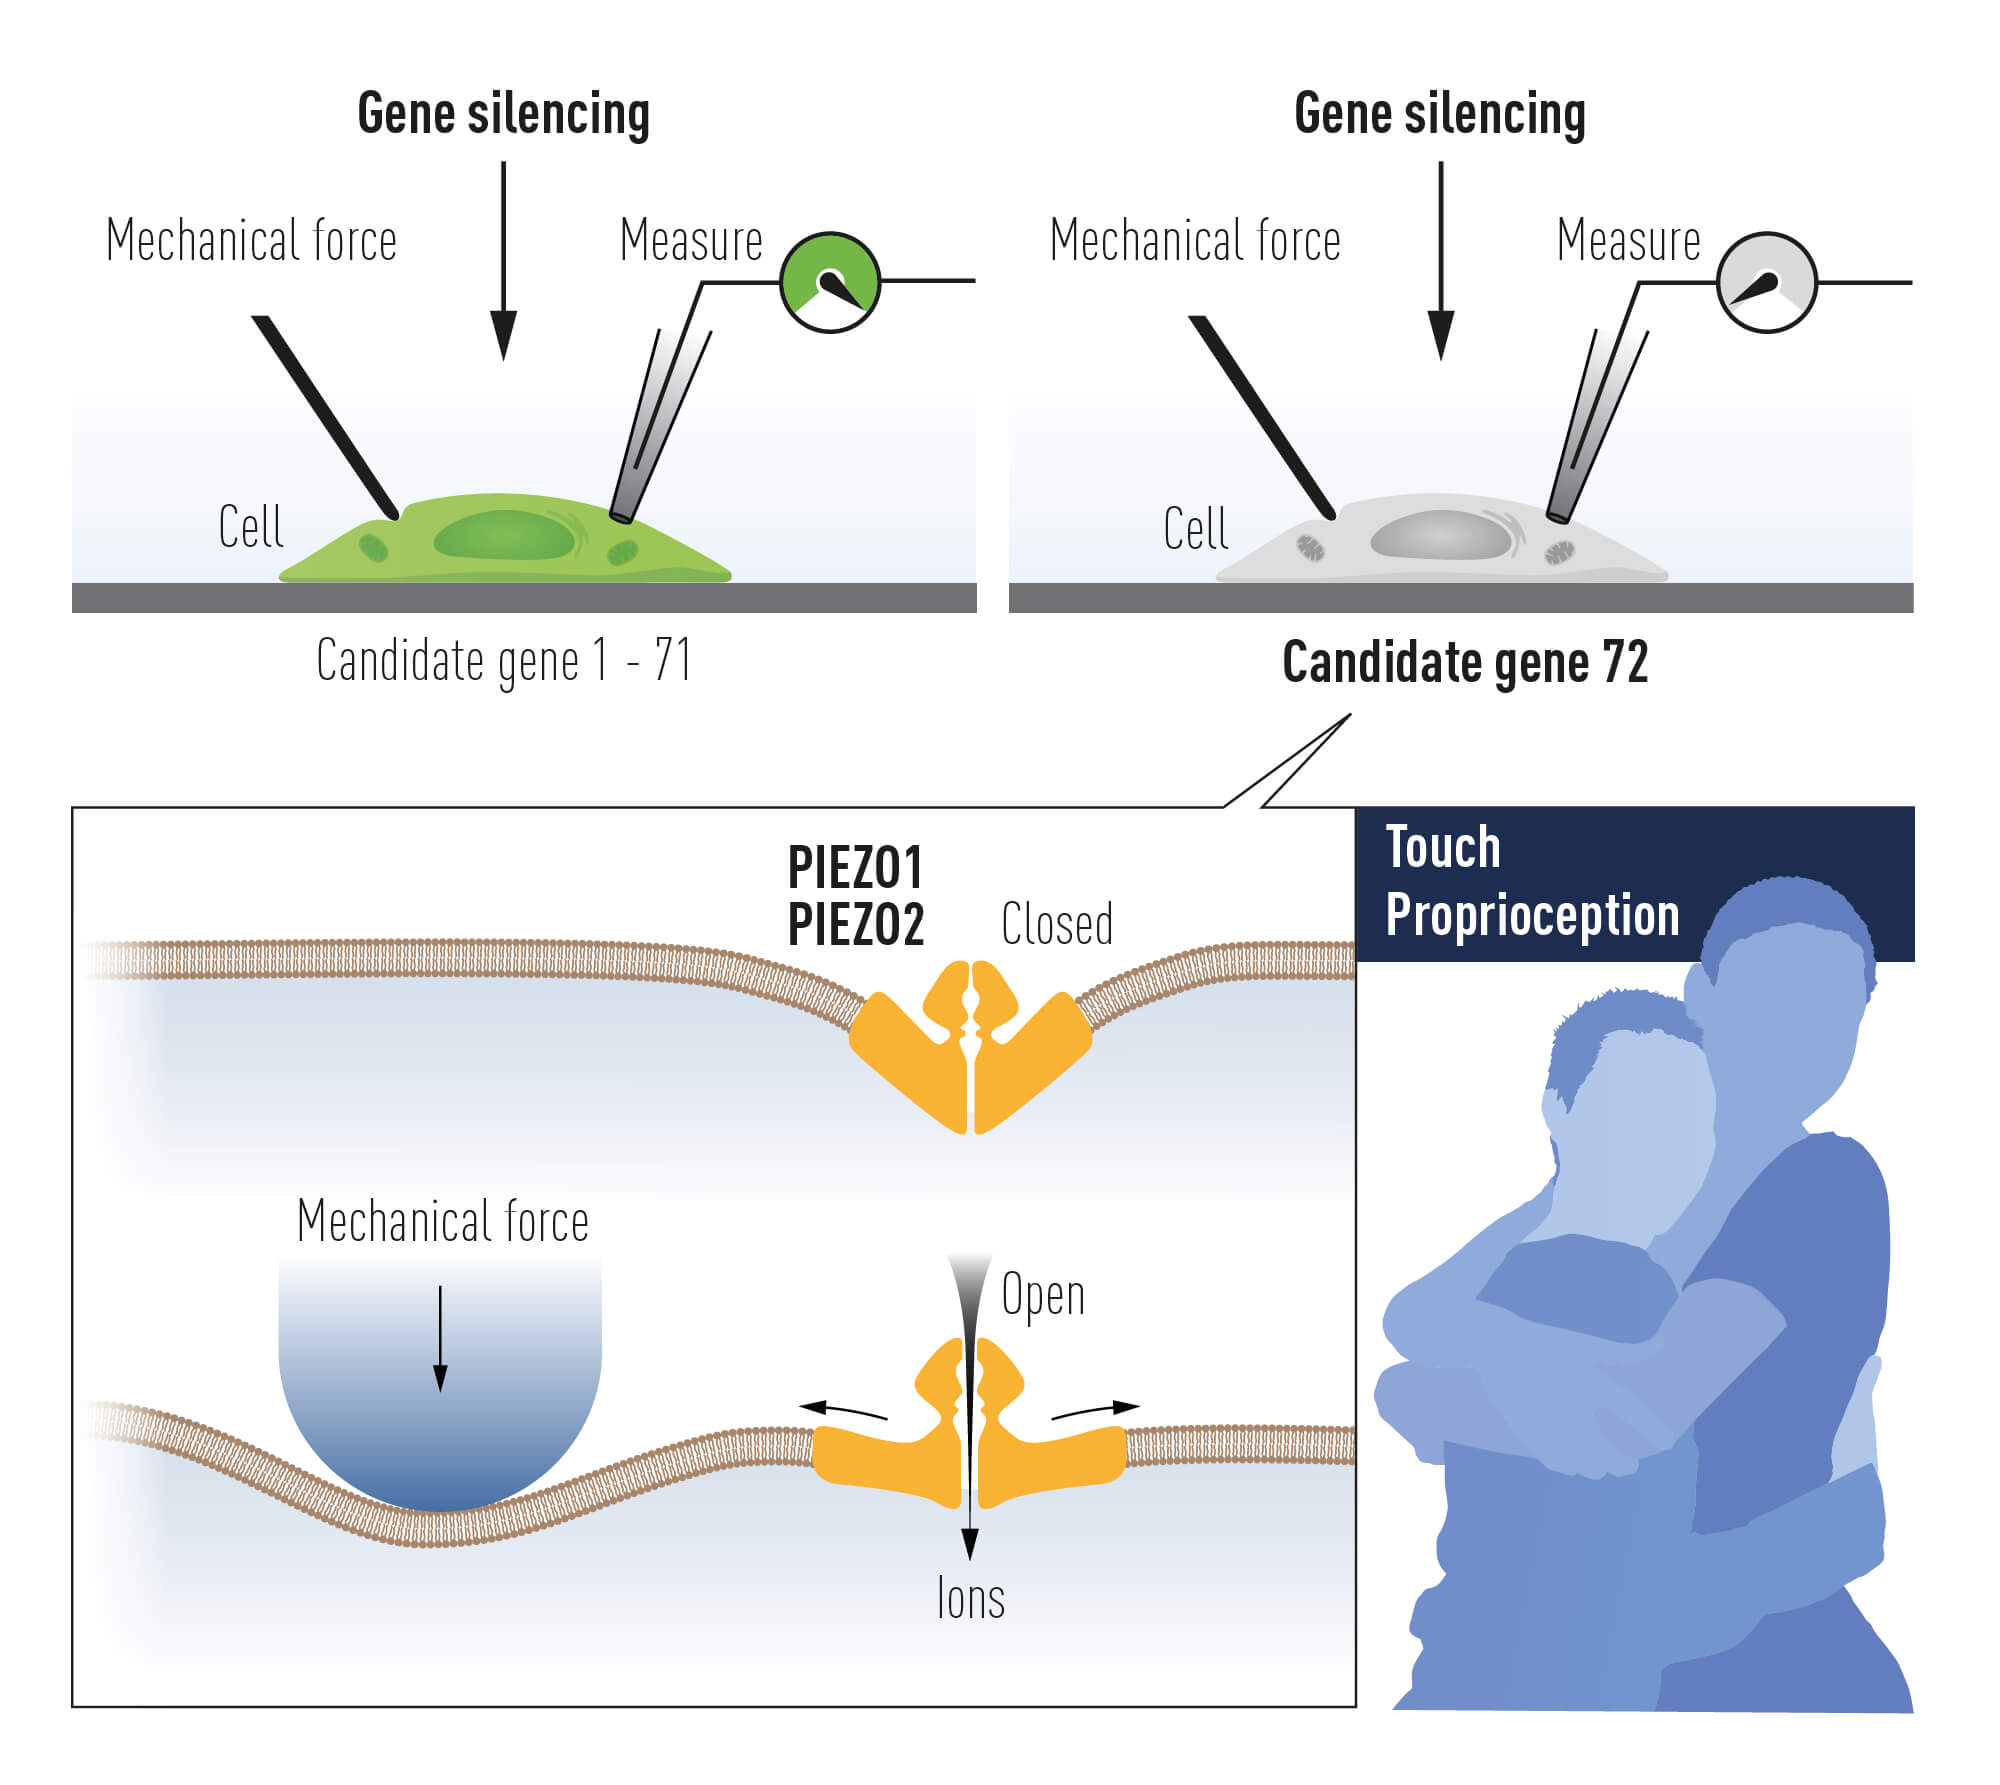 איור 3 – פאטאפוטיאן עשה שימוש בתאי תרבית על מנת לזהות תעלת יונים המשפועלת על ידי כוח מכאני. במסגרת ניסויים אלו זוהו שתי תעלות יונים חדשות:Piezo1  וכןPiezo2 . 